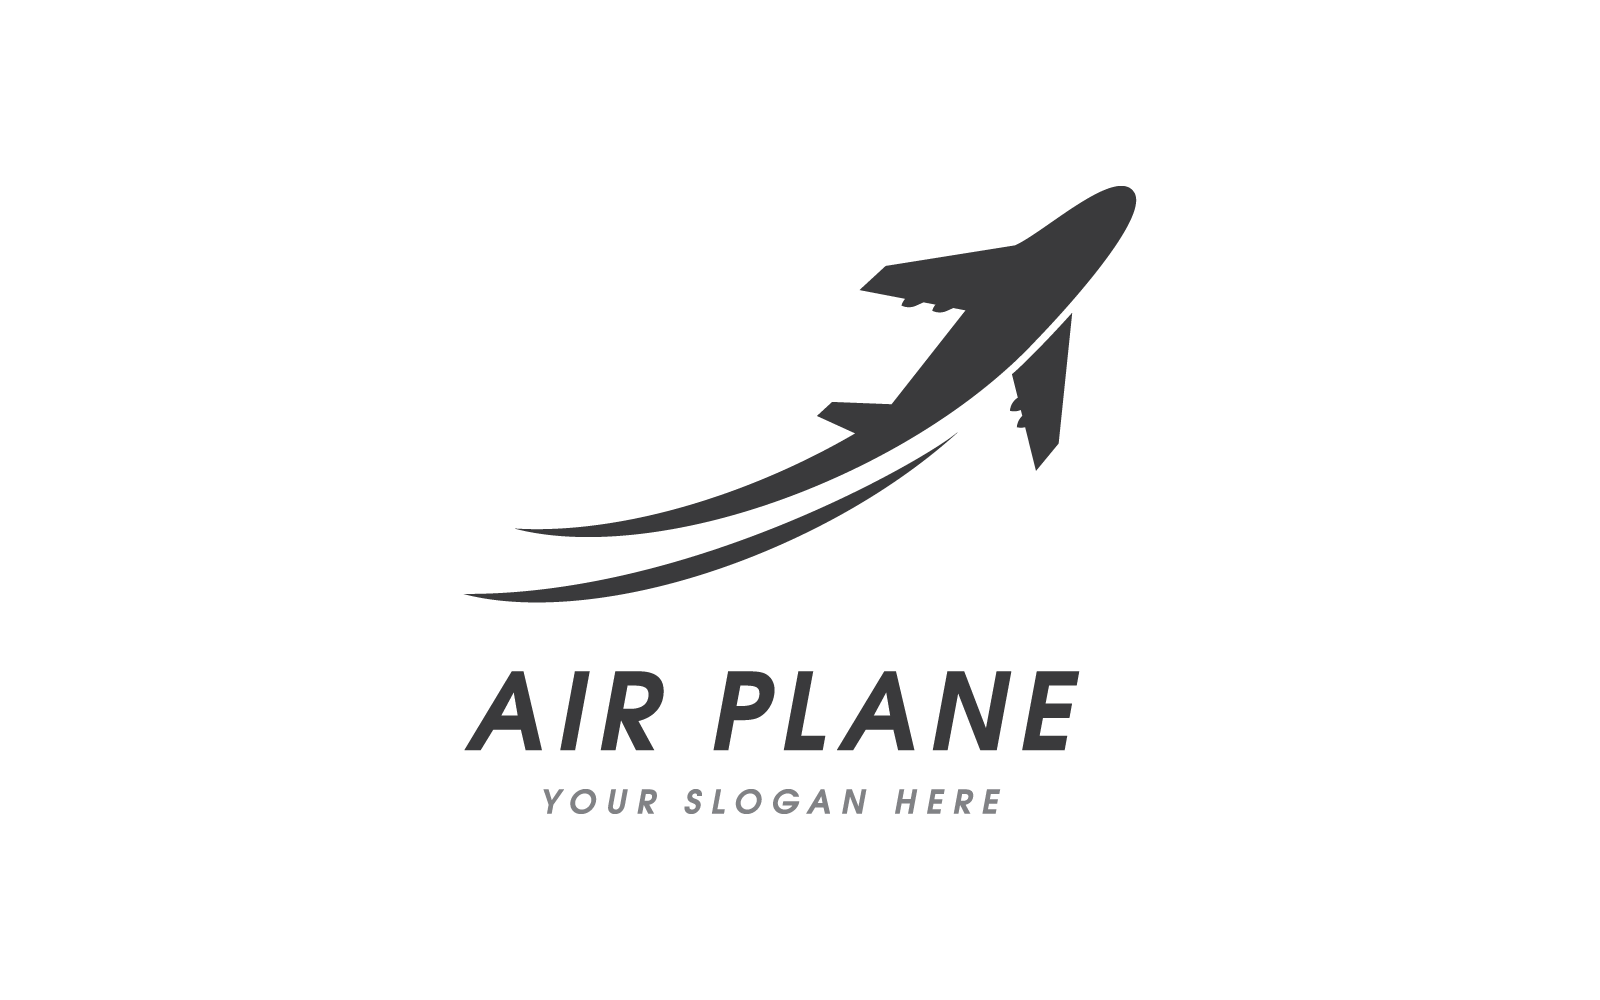 Modèle vectoriel de conception plate de logo d'illustration d'avion d'air